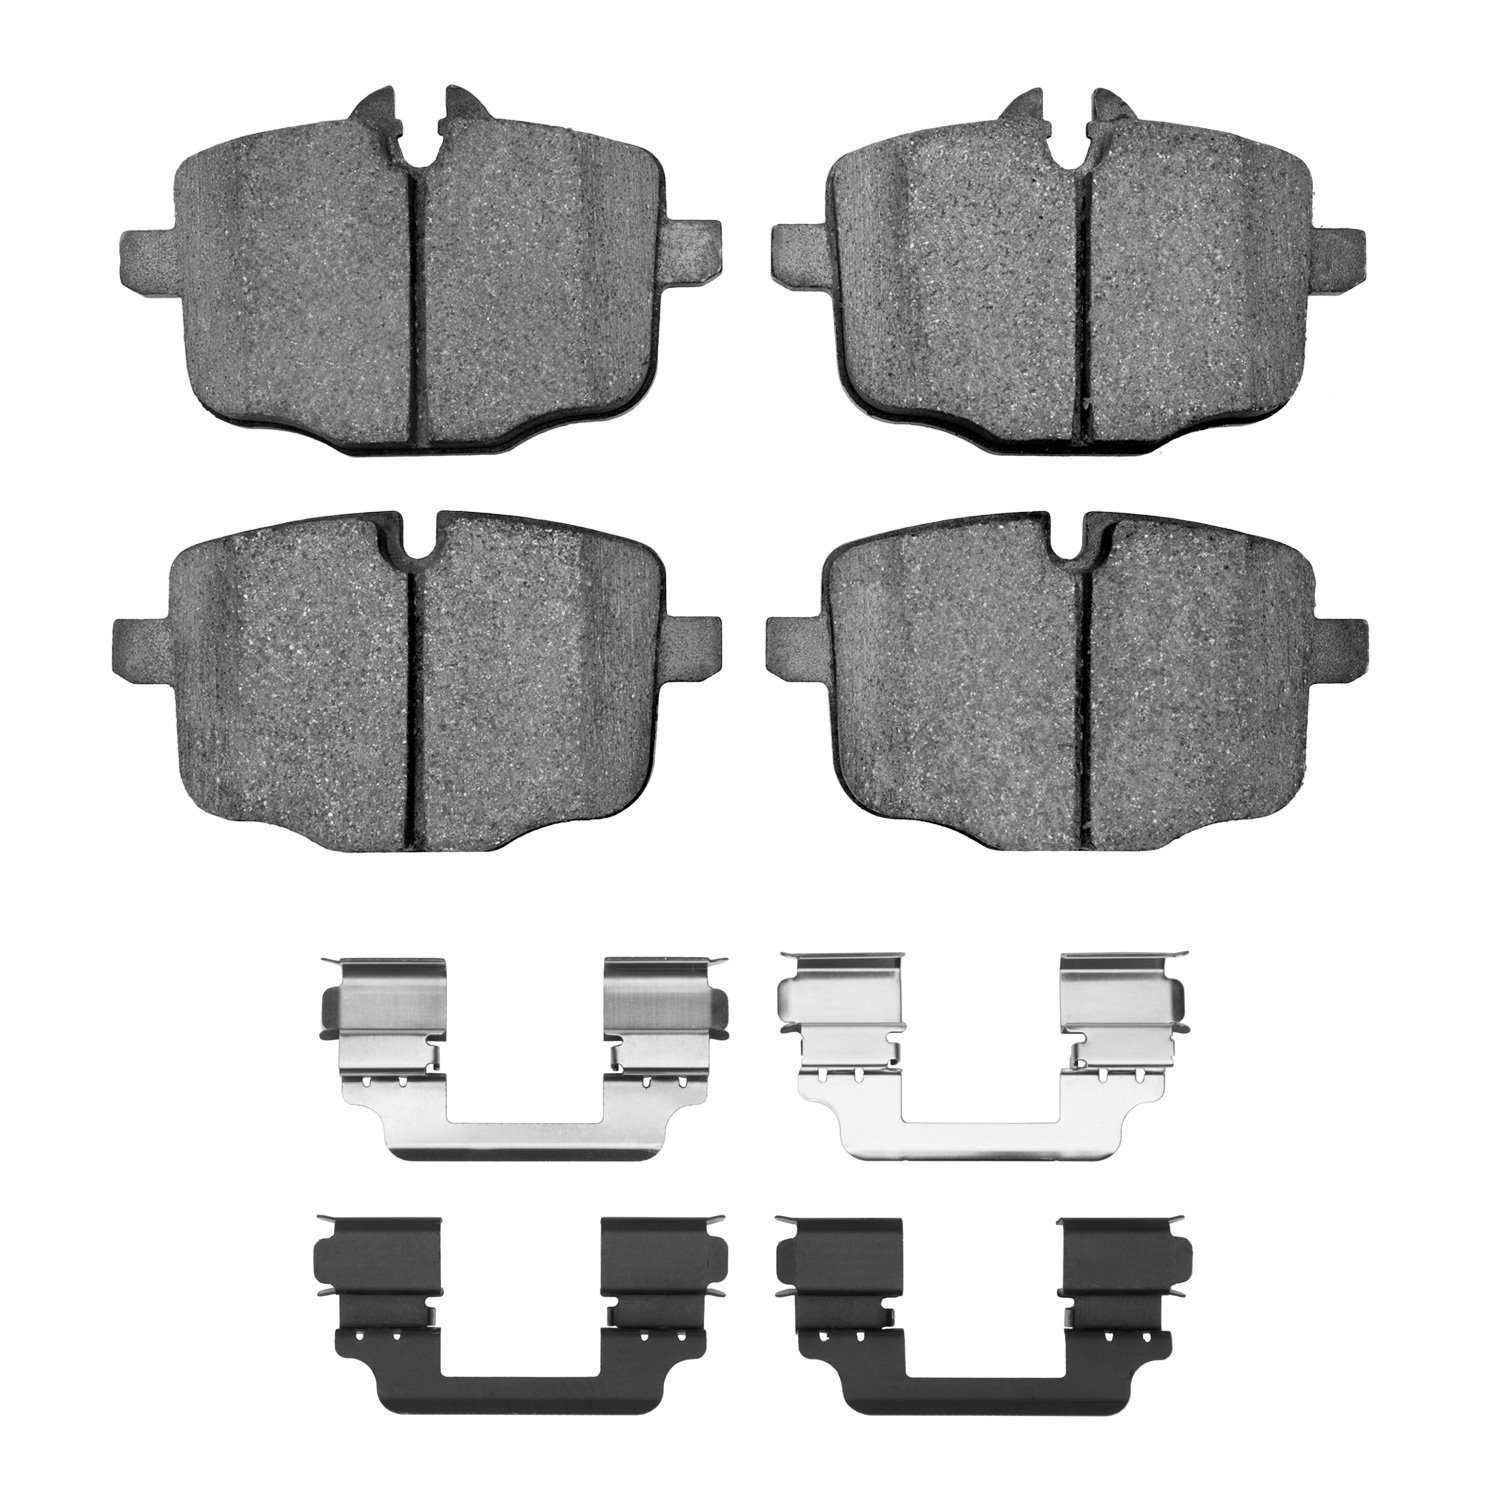 1310-1469-01 3000-Series Ceramic Brake Pads & Hardware Kit, 2011-2019 BMW, Position: Rear